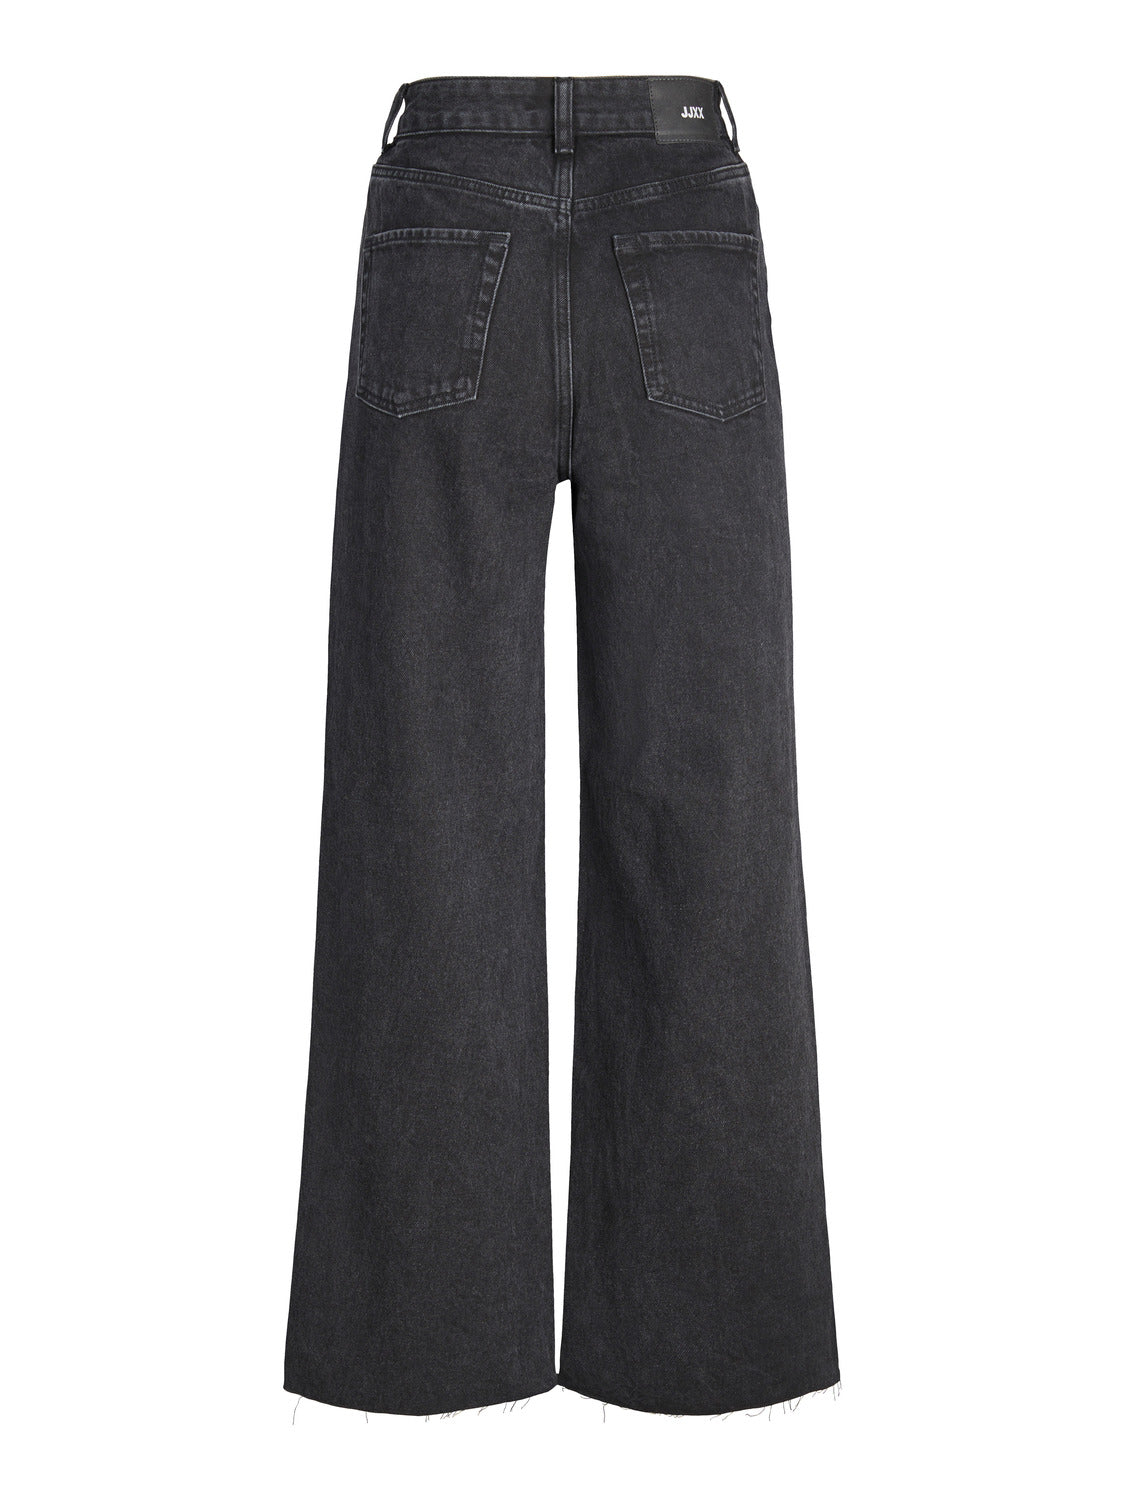 JXTOKYO Jeans - Black Denim